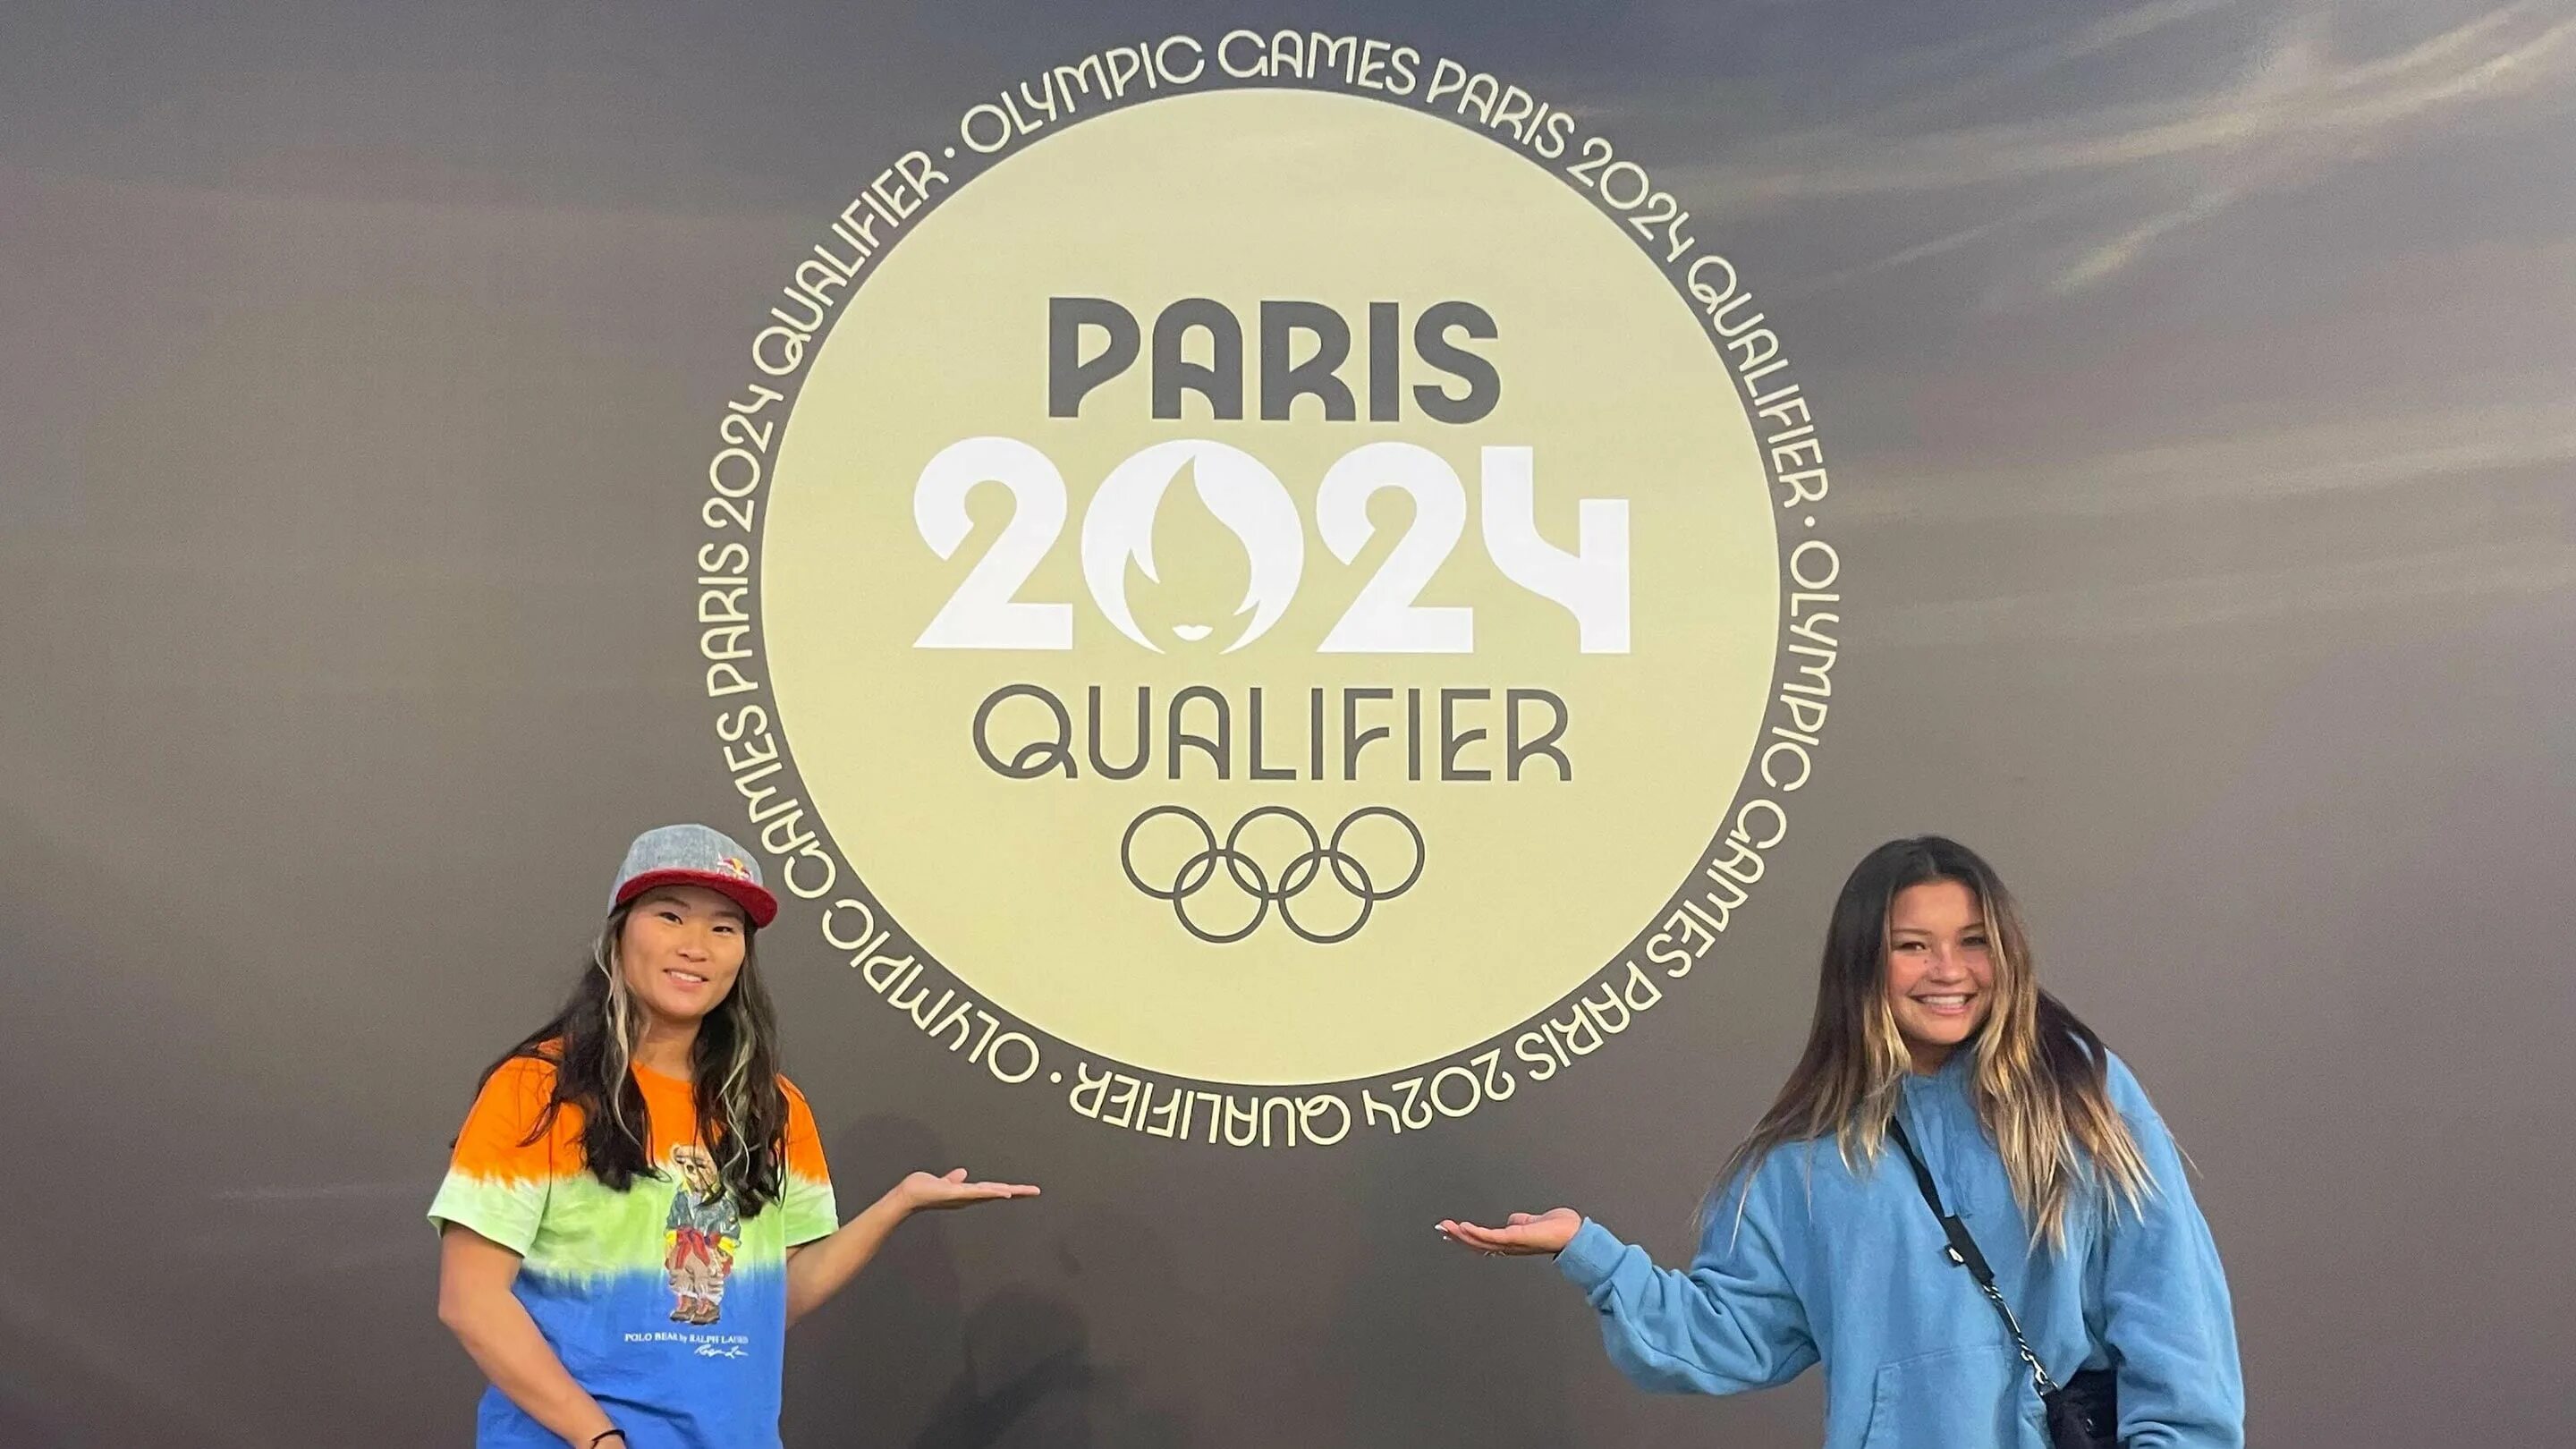 Открытие олимпиады 2024. Paris 2024 Olympics.